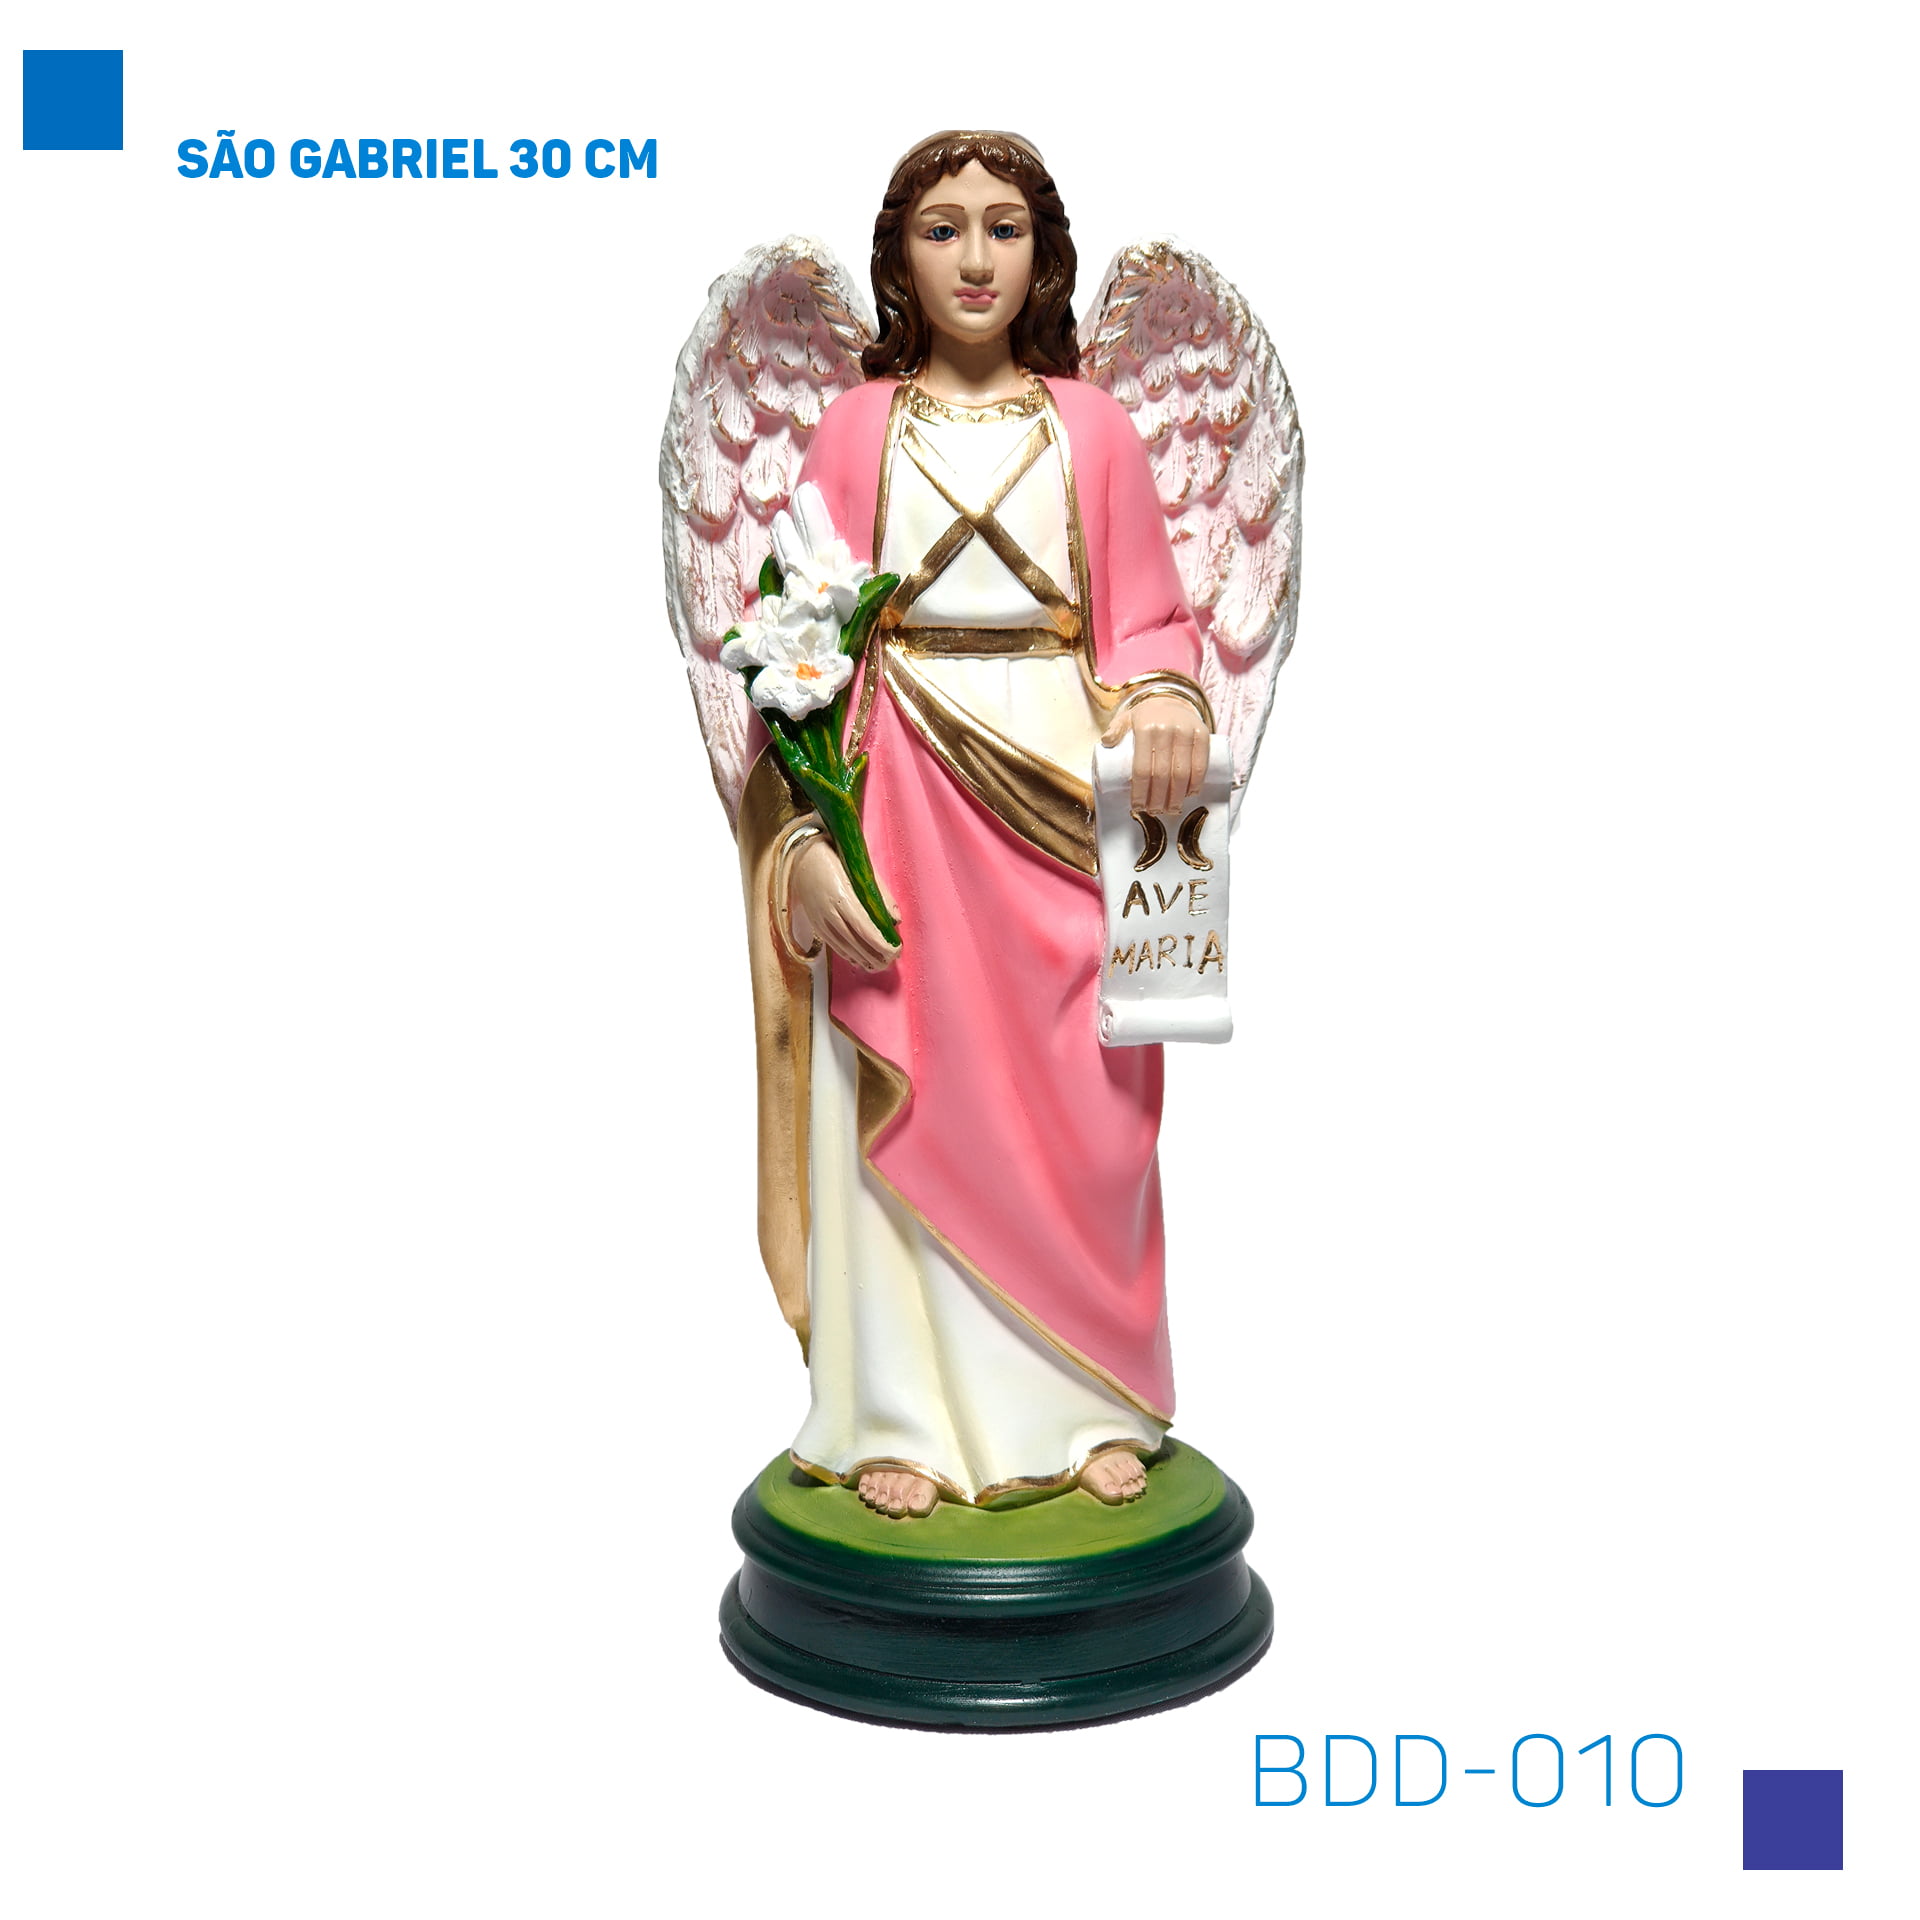 Bira Artigos Religiosos - São Gabriel 30 cm - Cód . BDD-010